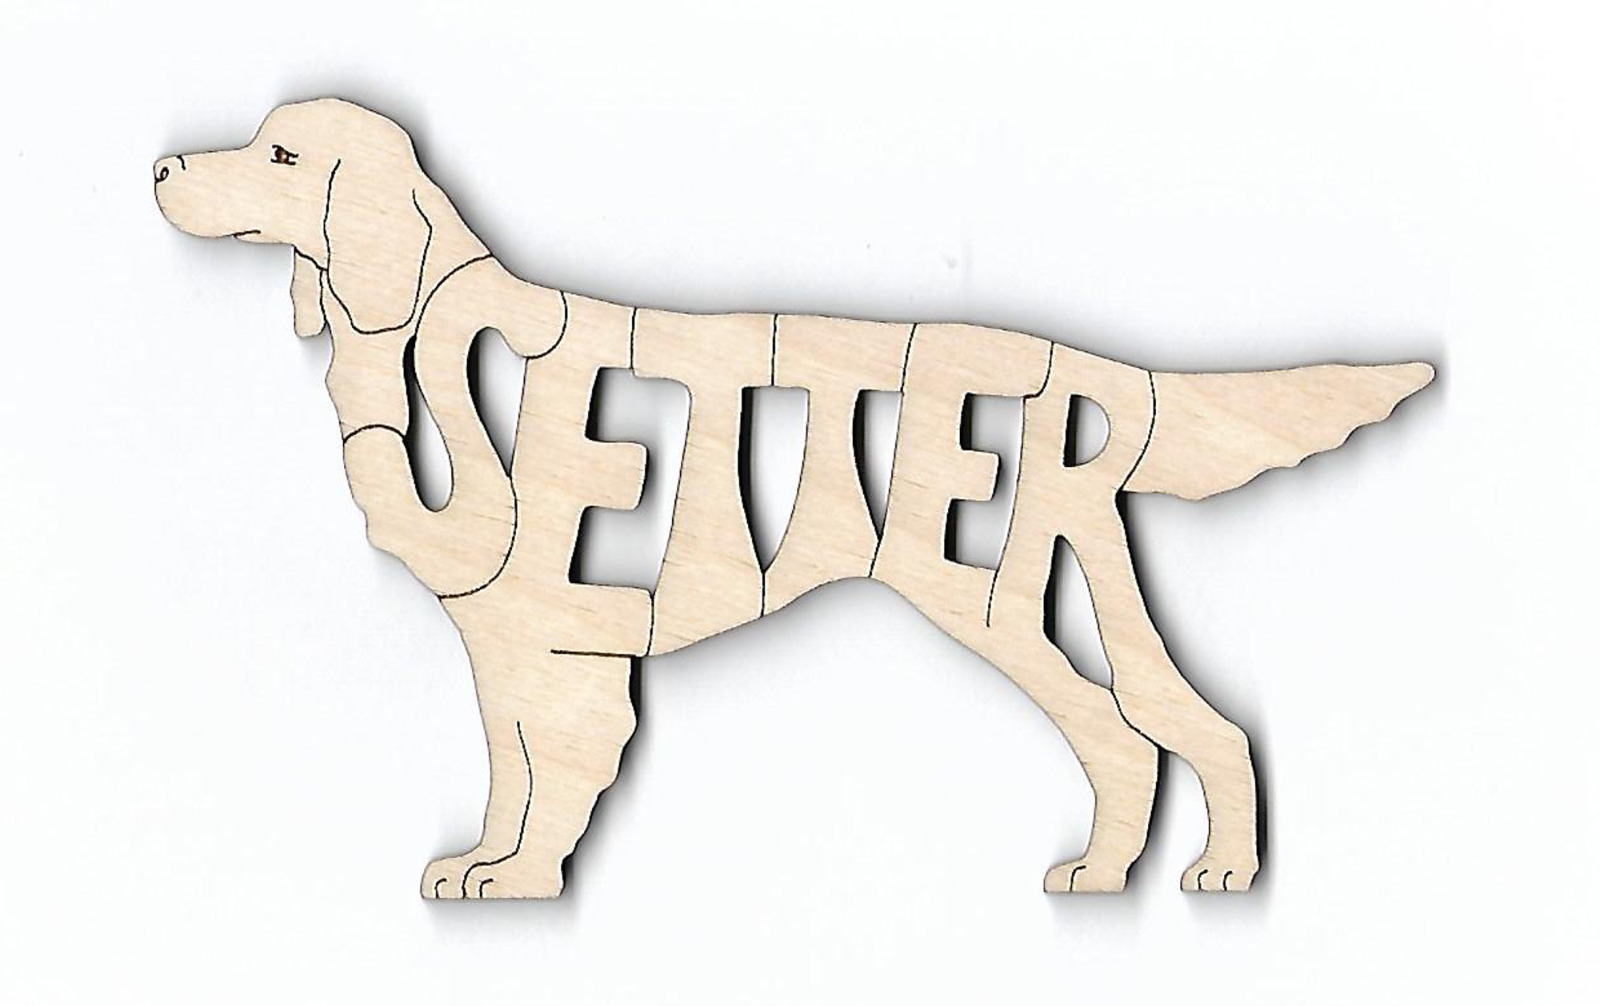 Gordon Setter Dog laser cut wood Magnet